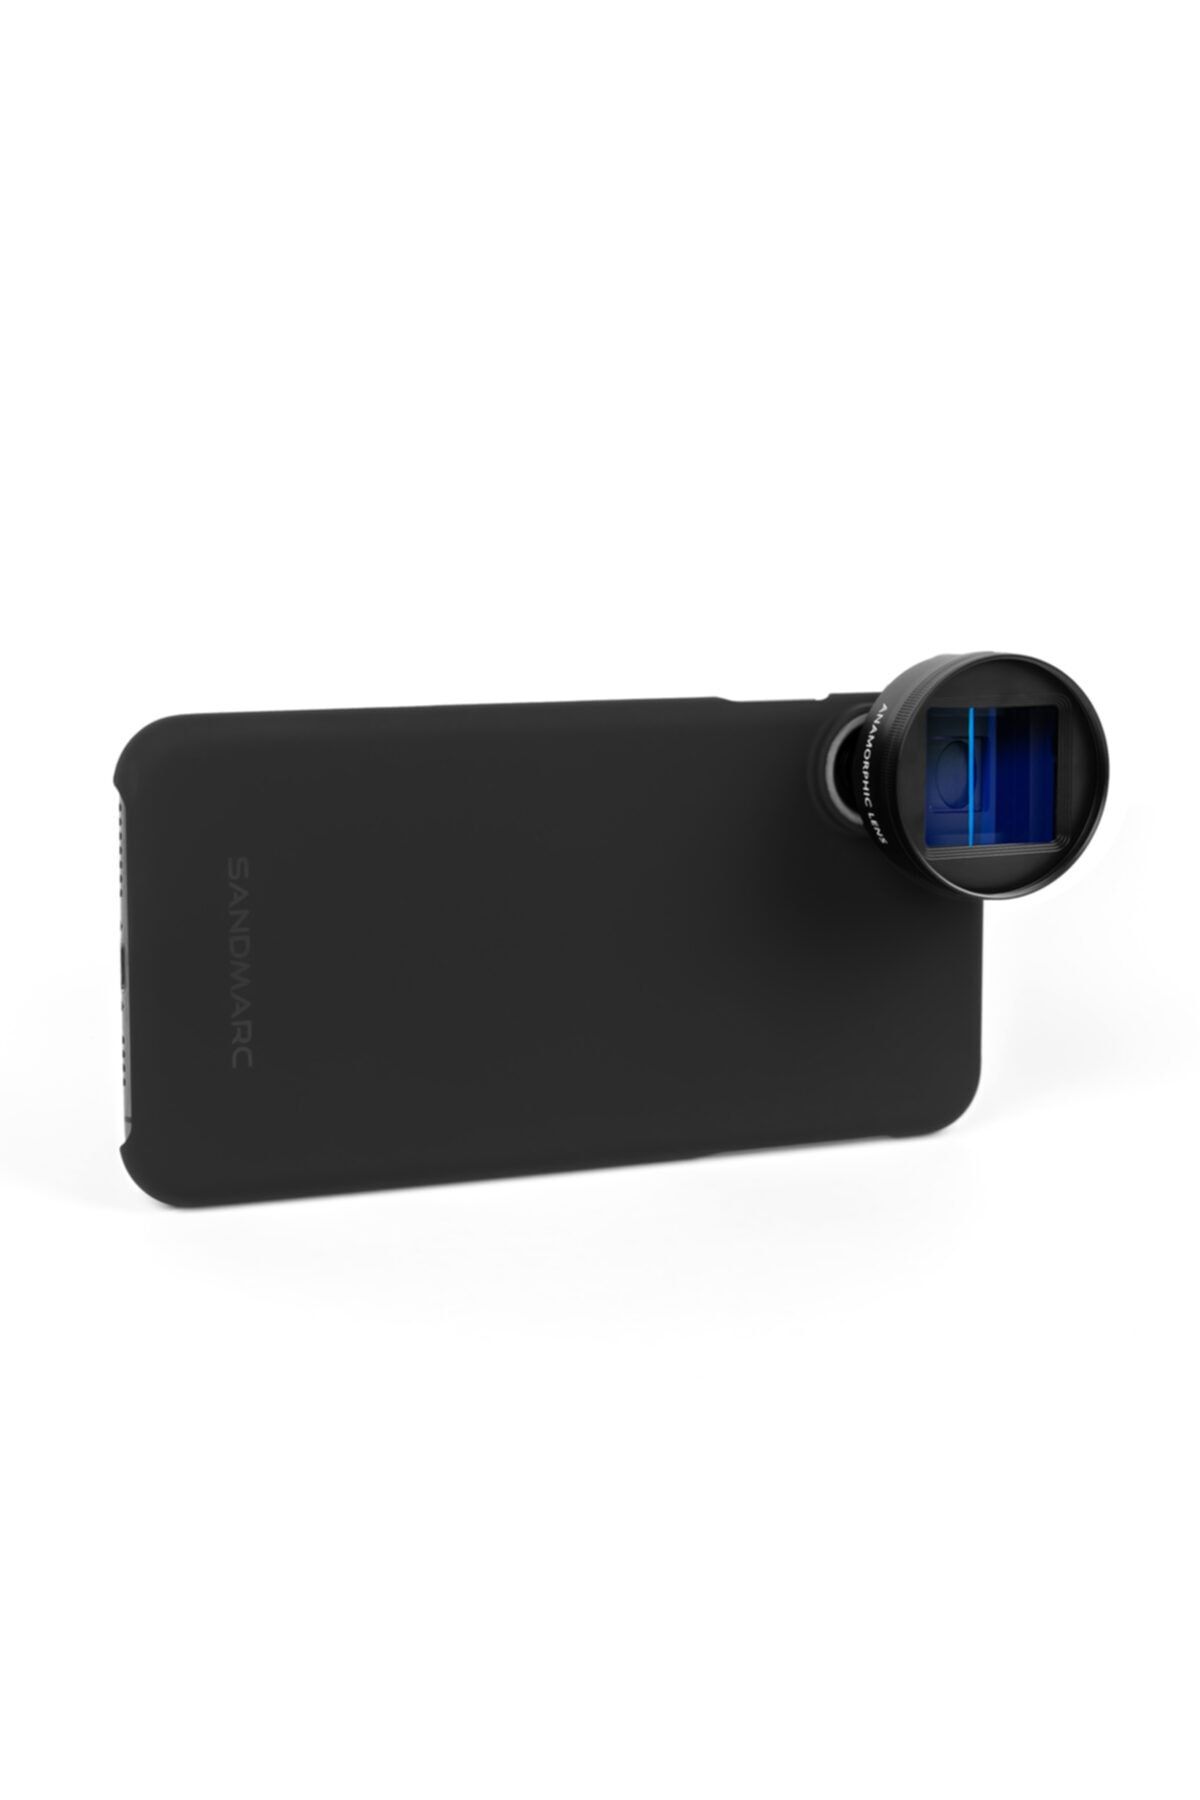 SANDMARC Anamorfik Lens - Iphone 11